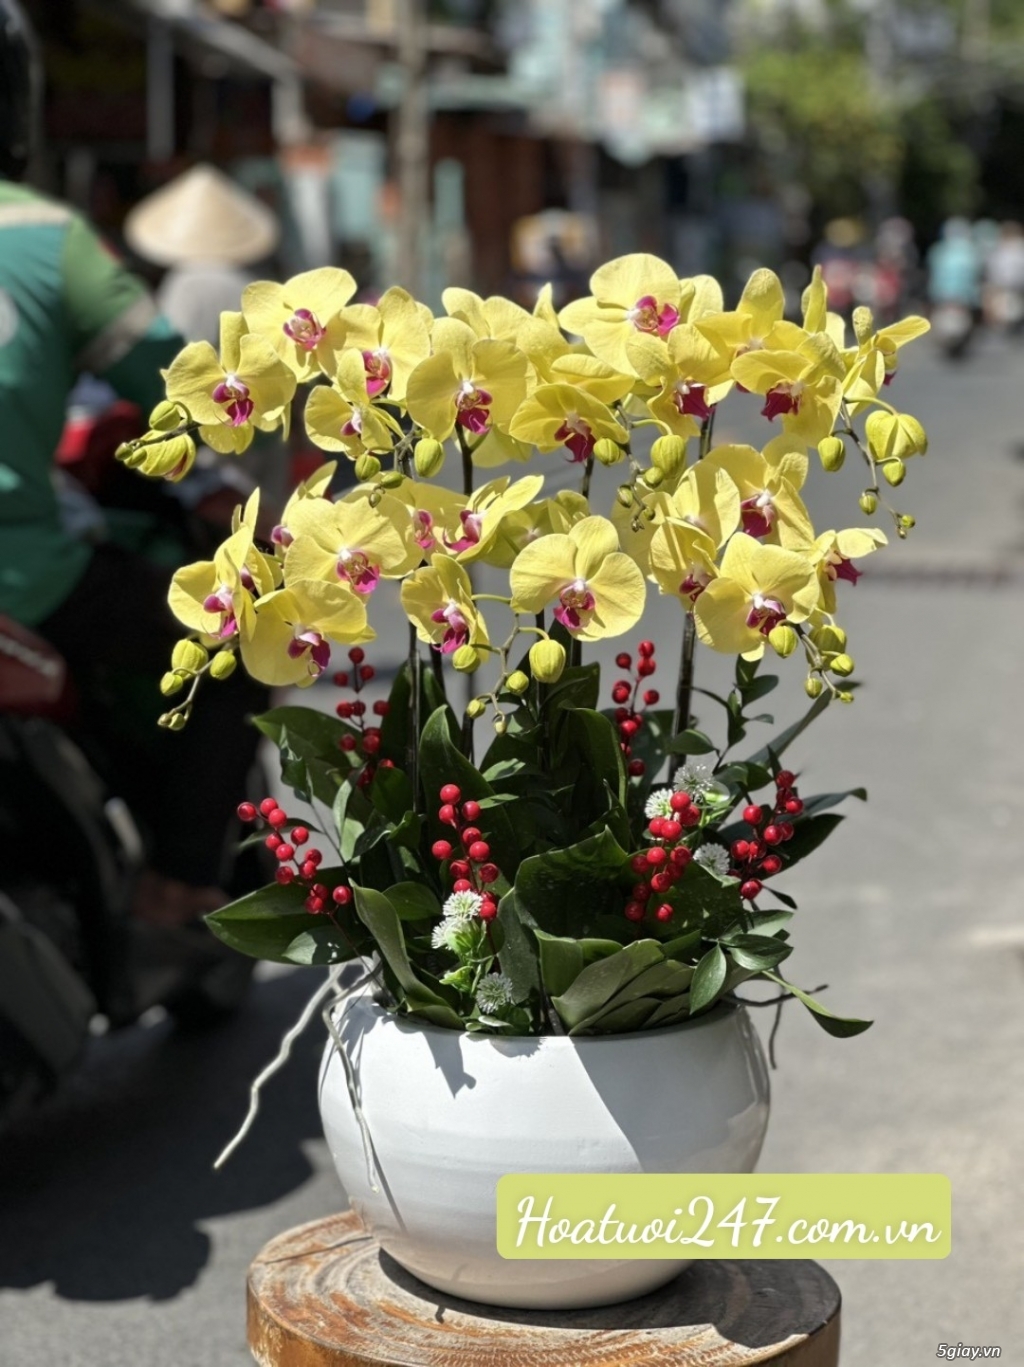 Shop hoa tươi bán Lan Hồ Điệp đẹp uy tín tại TPHCM - Hoatuoi247.com. - 1